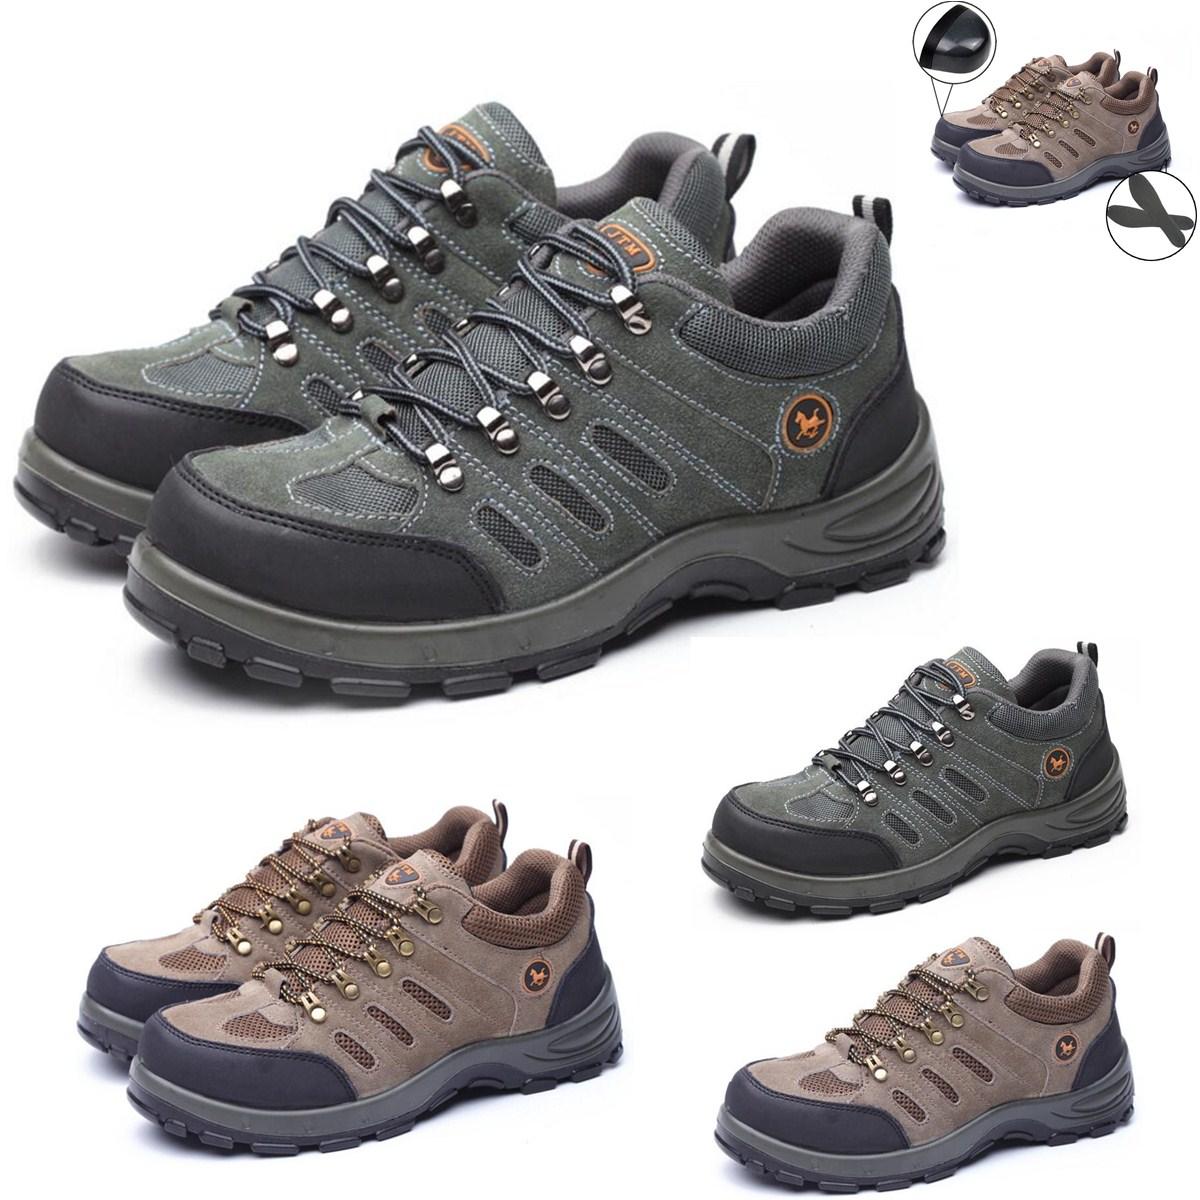 Ανδρικά αθλητικά παπούτσια ασφαλείας TENGOO με ατσάλινη μύτη, διαπνέοντα, για αναρρίχηση, πεζοπορία και εργασία στον αέρα.